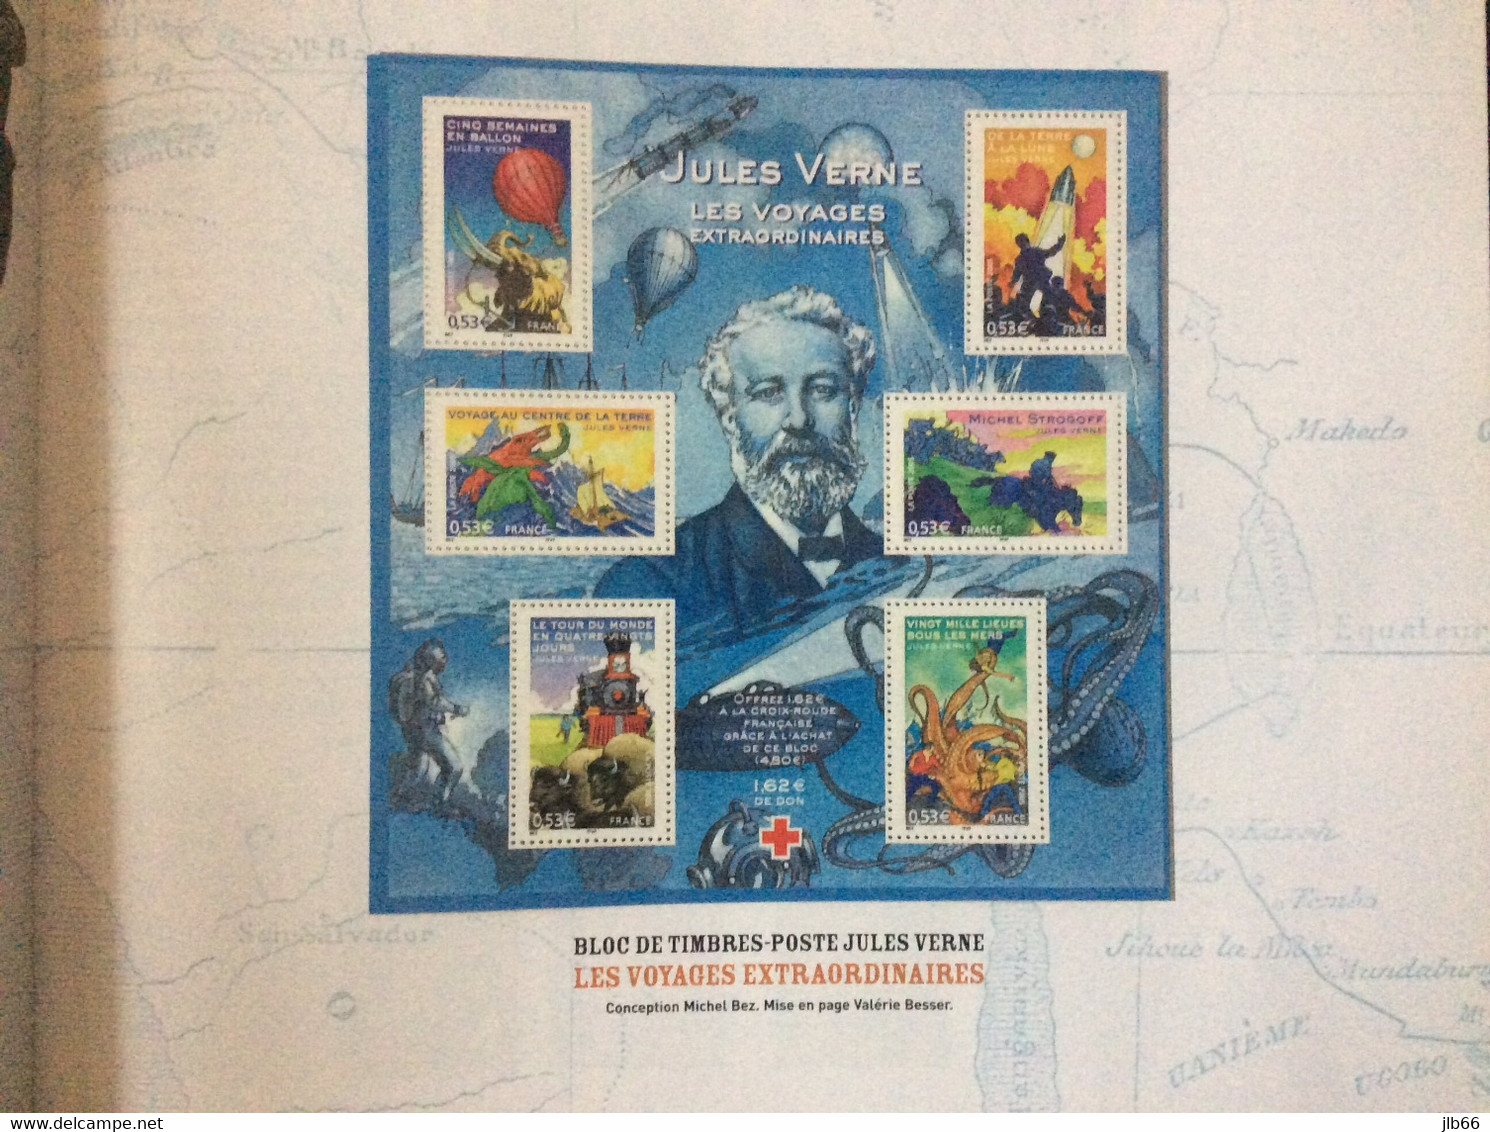 Livre Timbré Jules Verne Aventures Et Légendes Complet Avec Son Bloc Sa Gravure Et Ses 6 Feuillets Gommés Inedits - Postdokumente